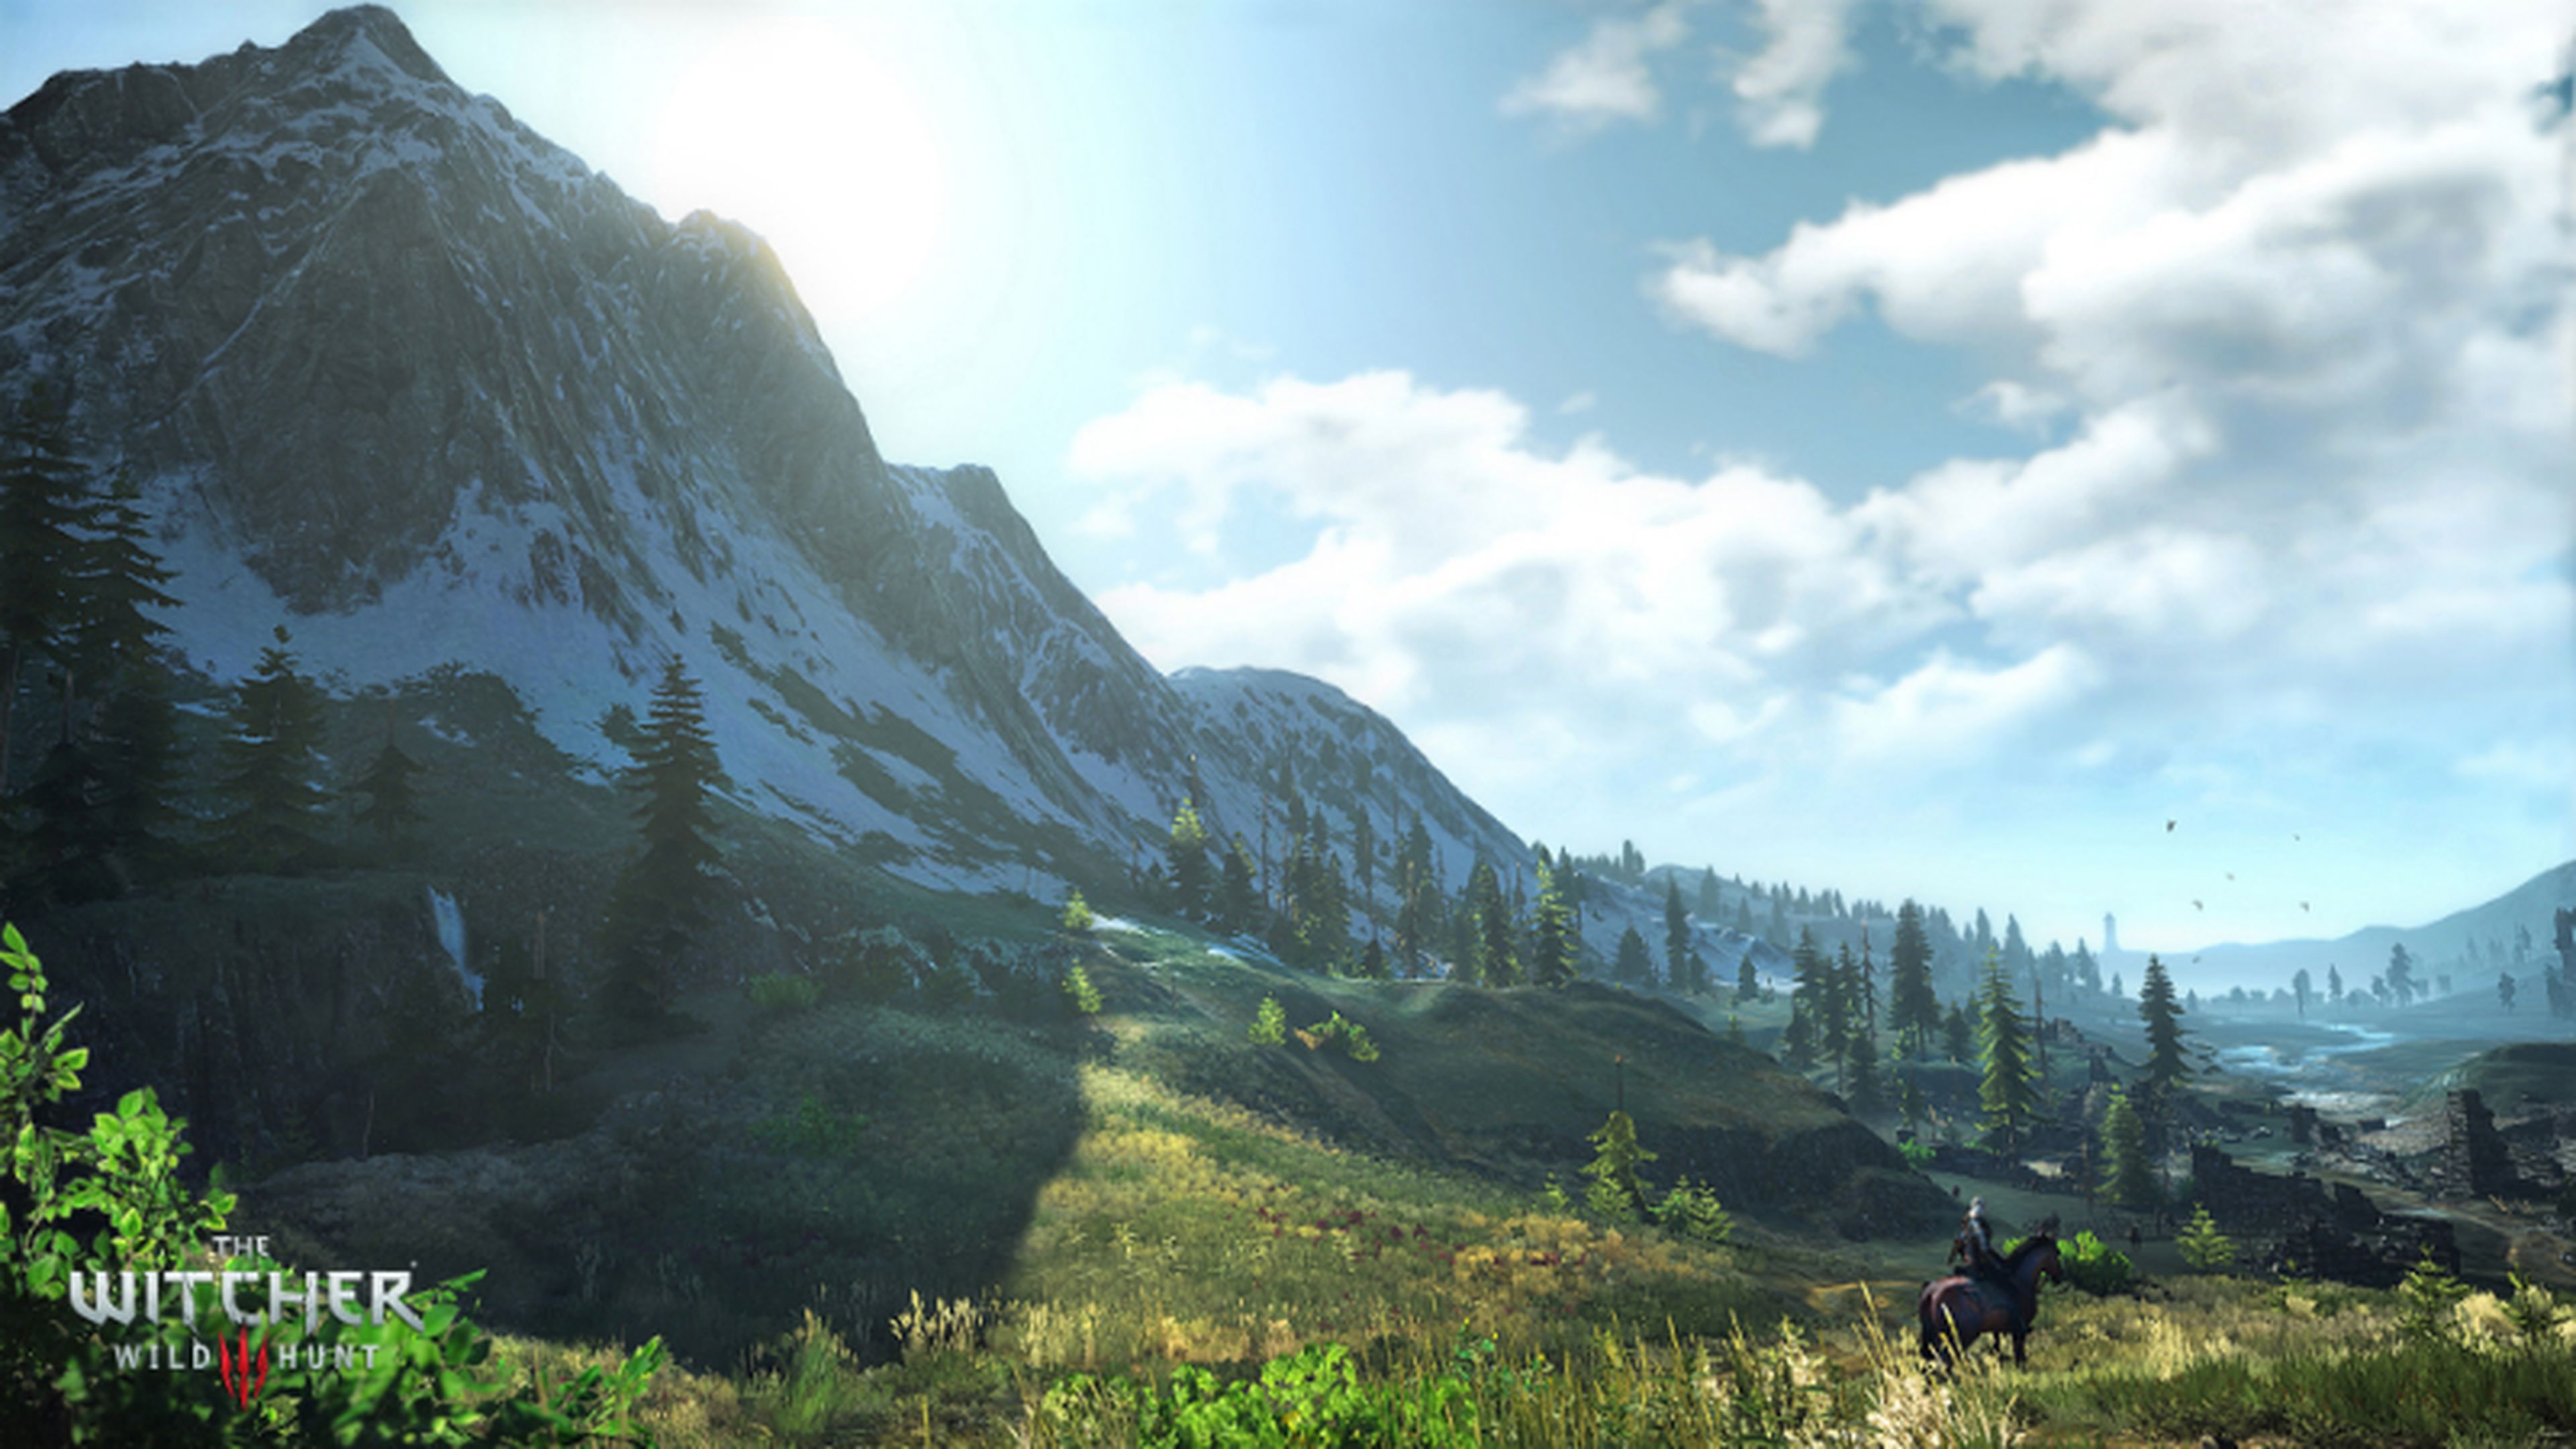 The Witcher 3, parche 1.05 ya disponible en PS4 y Xbox One